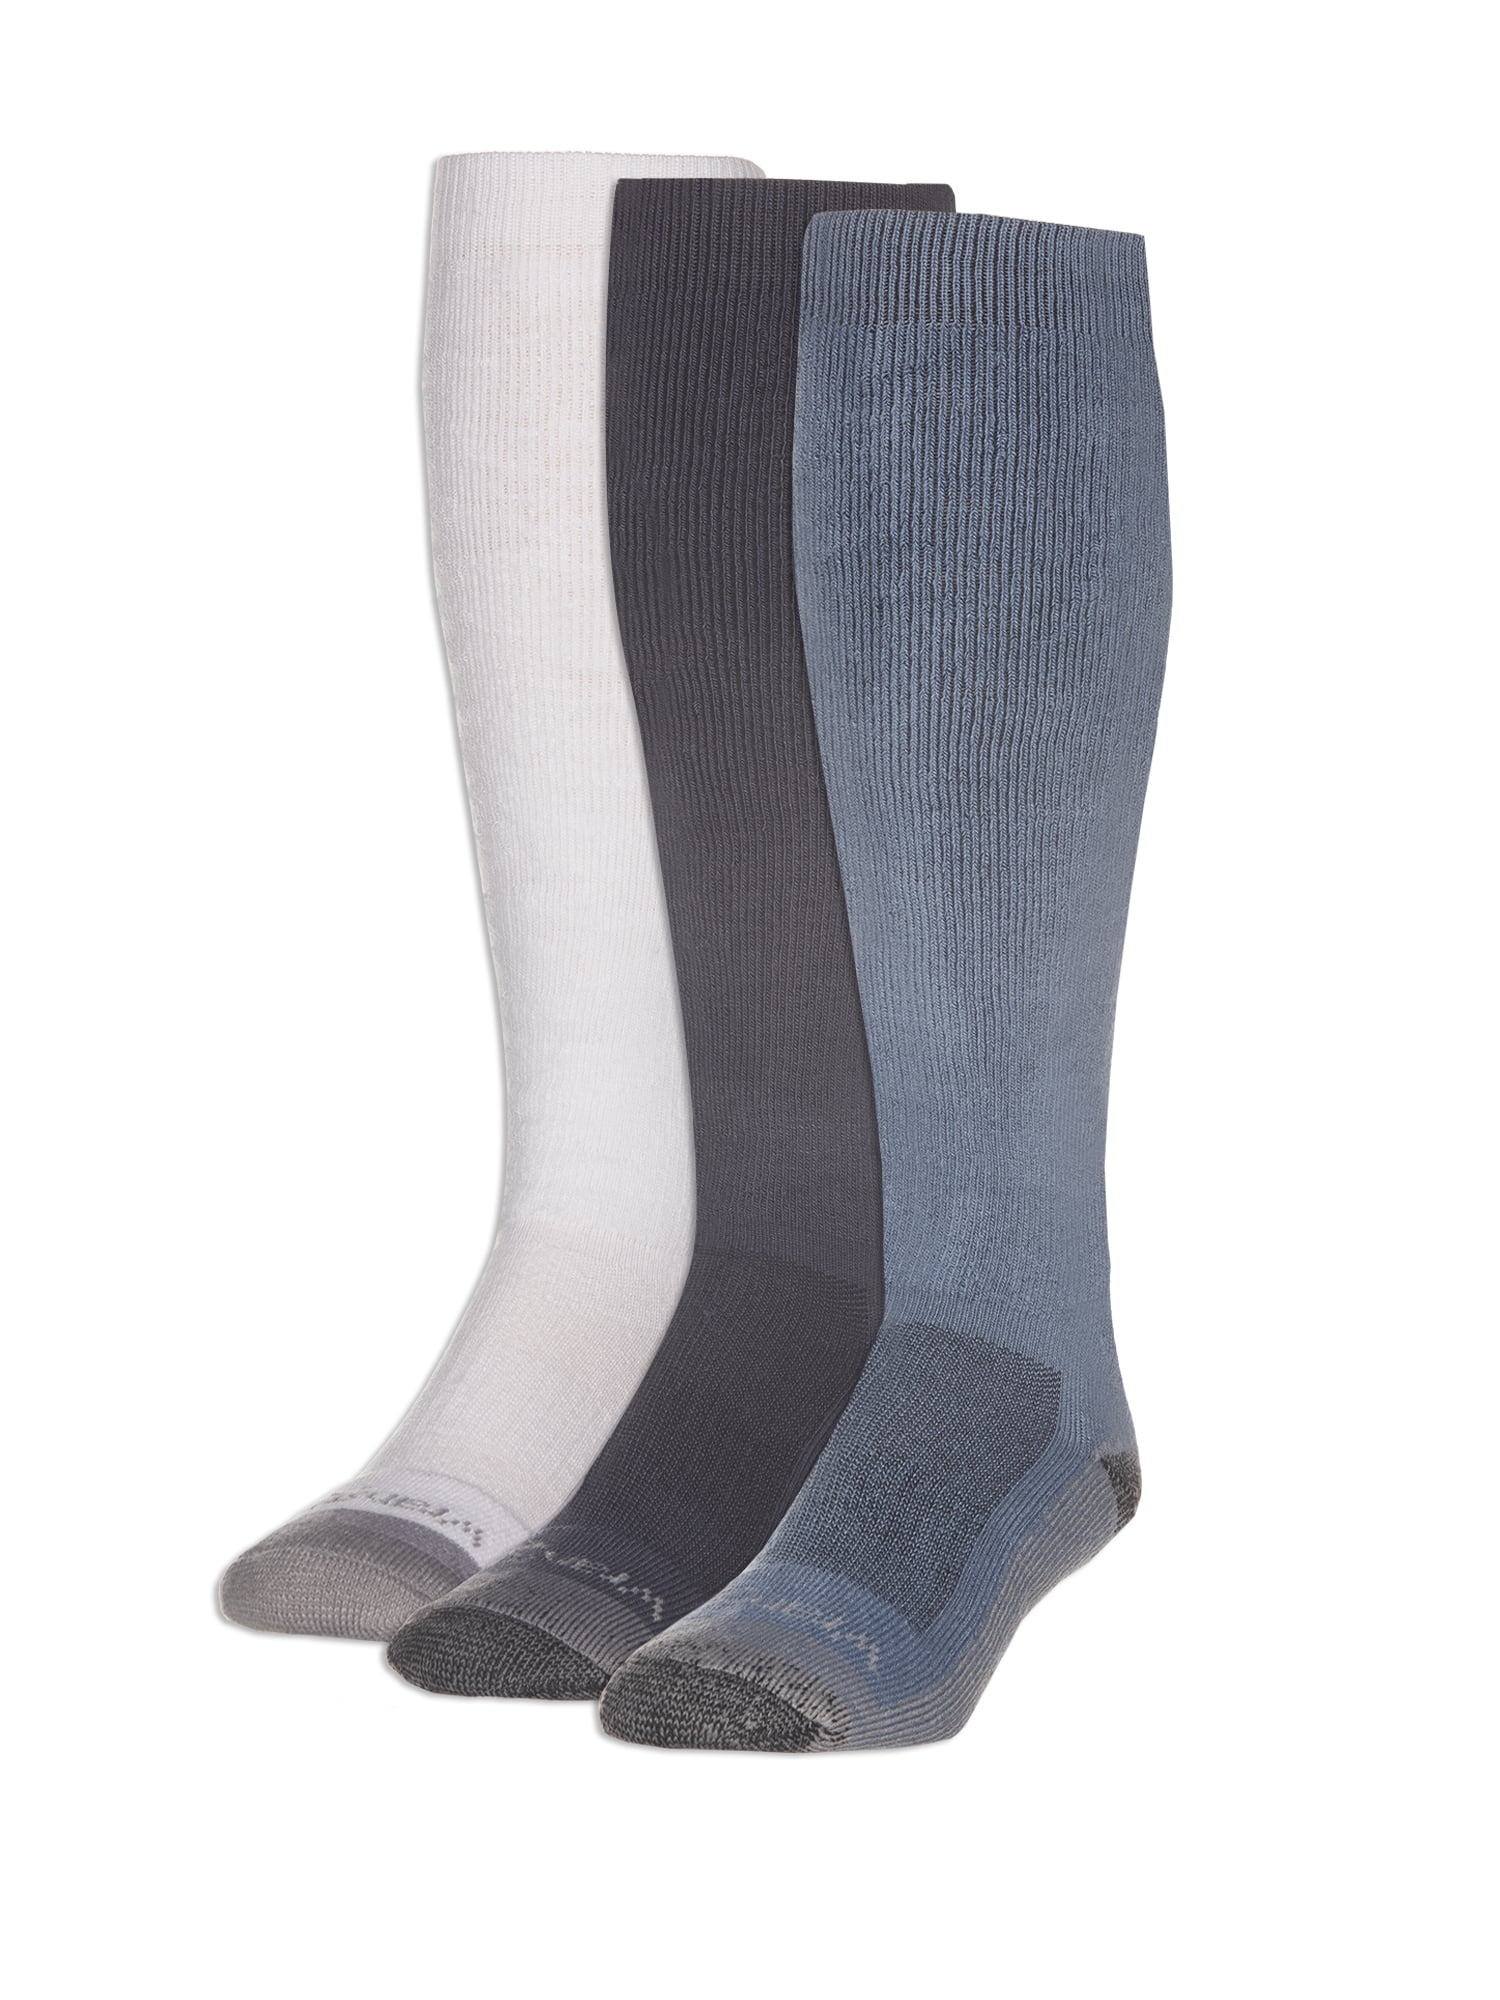 Wrangler Men's Western Socks, 3-Pack - Walmart.com